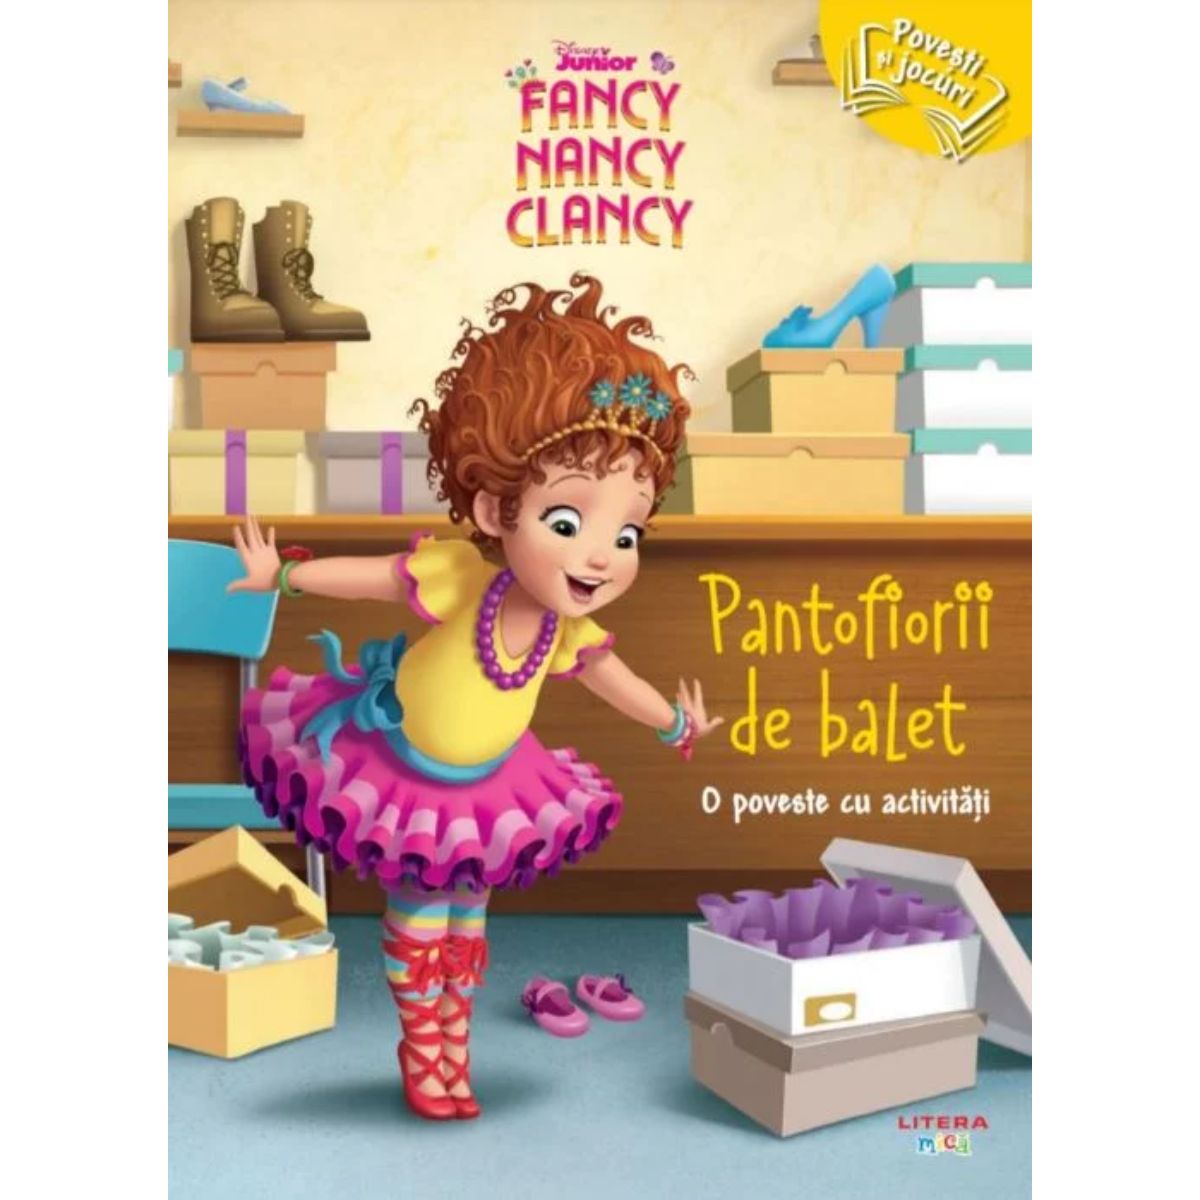 Disney Junior Fancy Nancy Clancy, Pantofiorii de balet balet